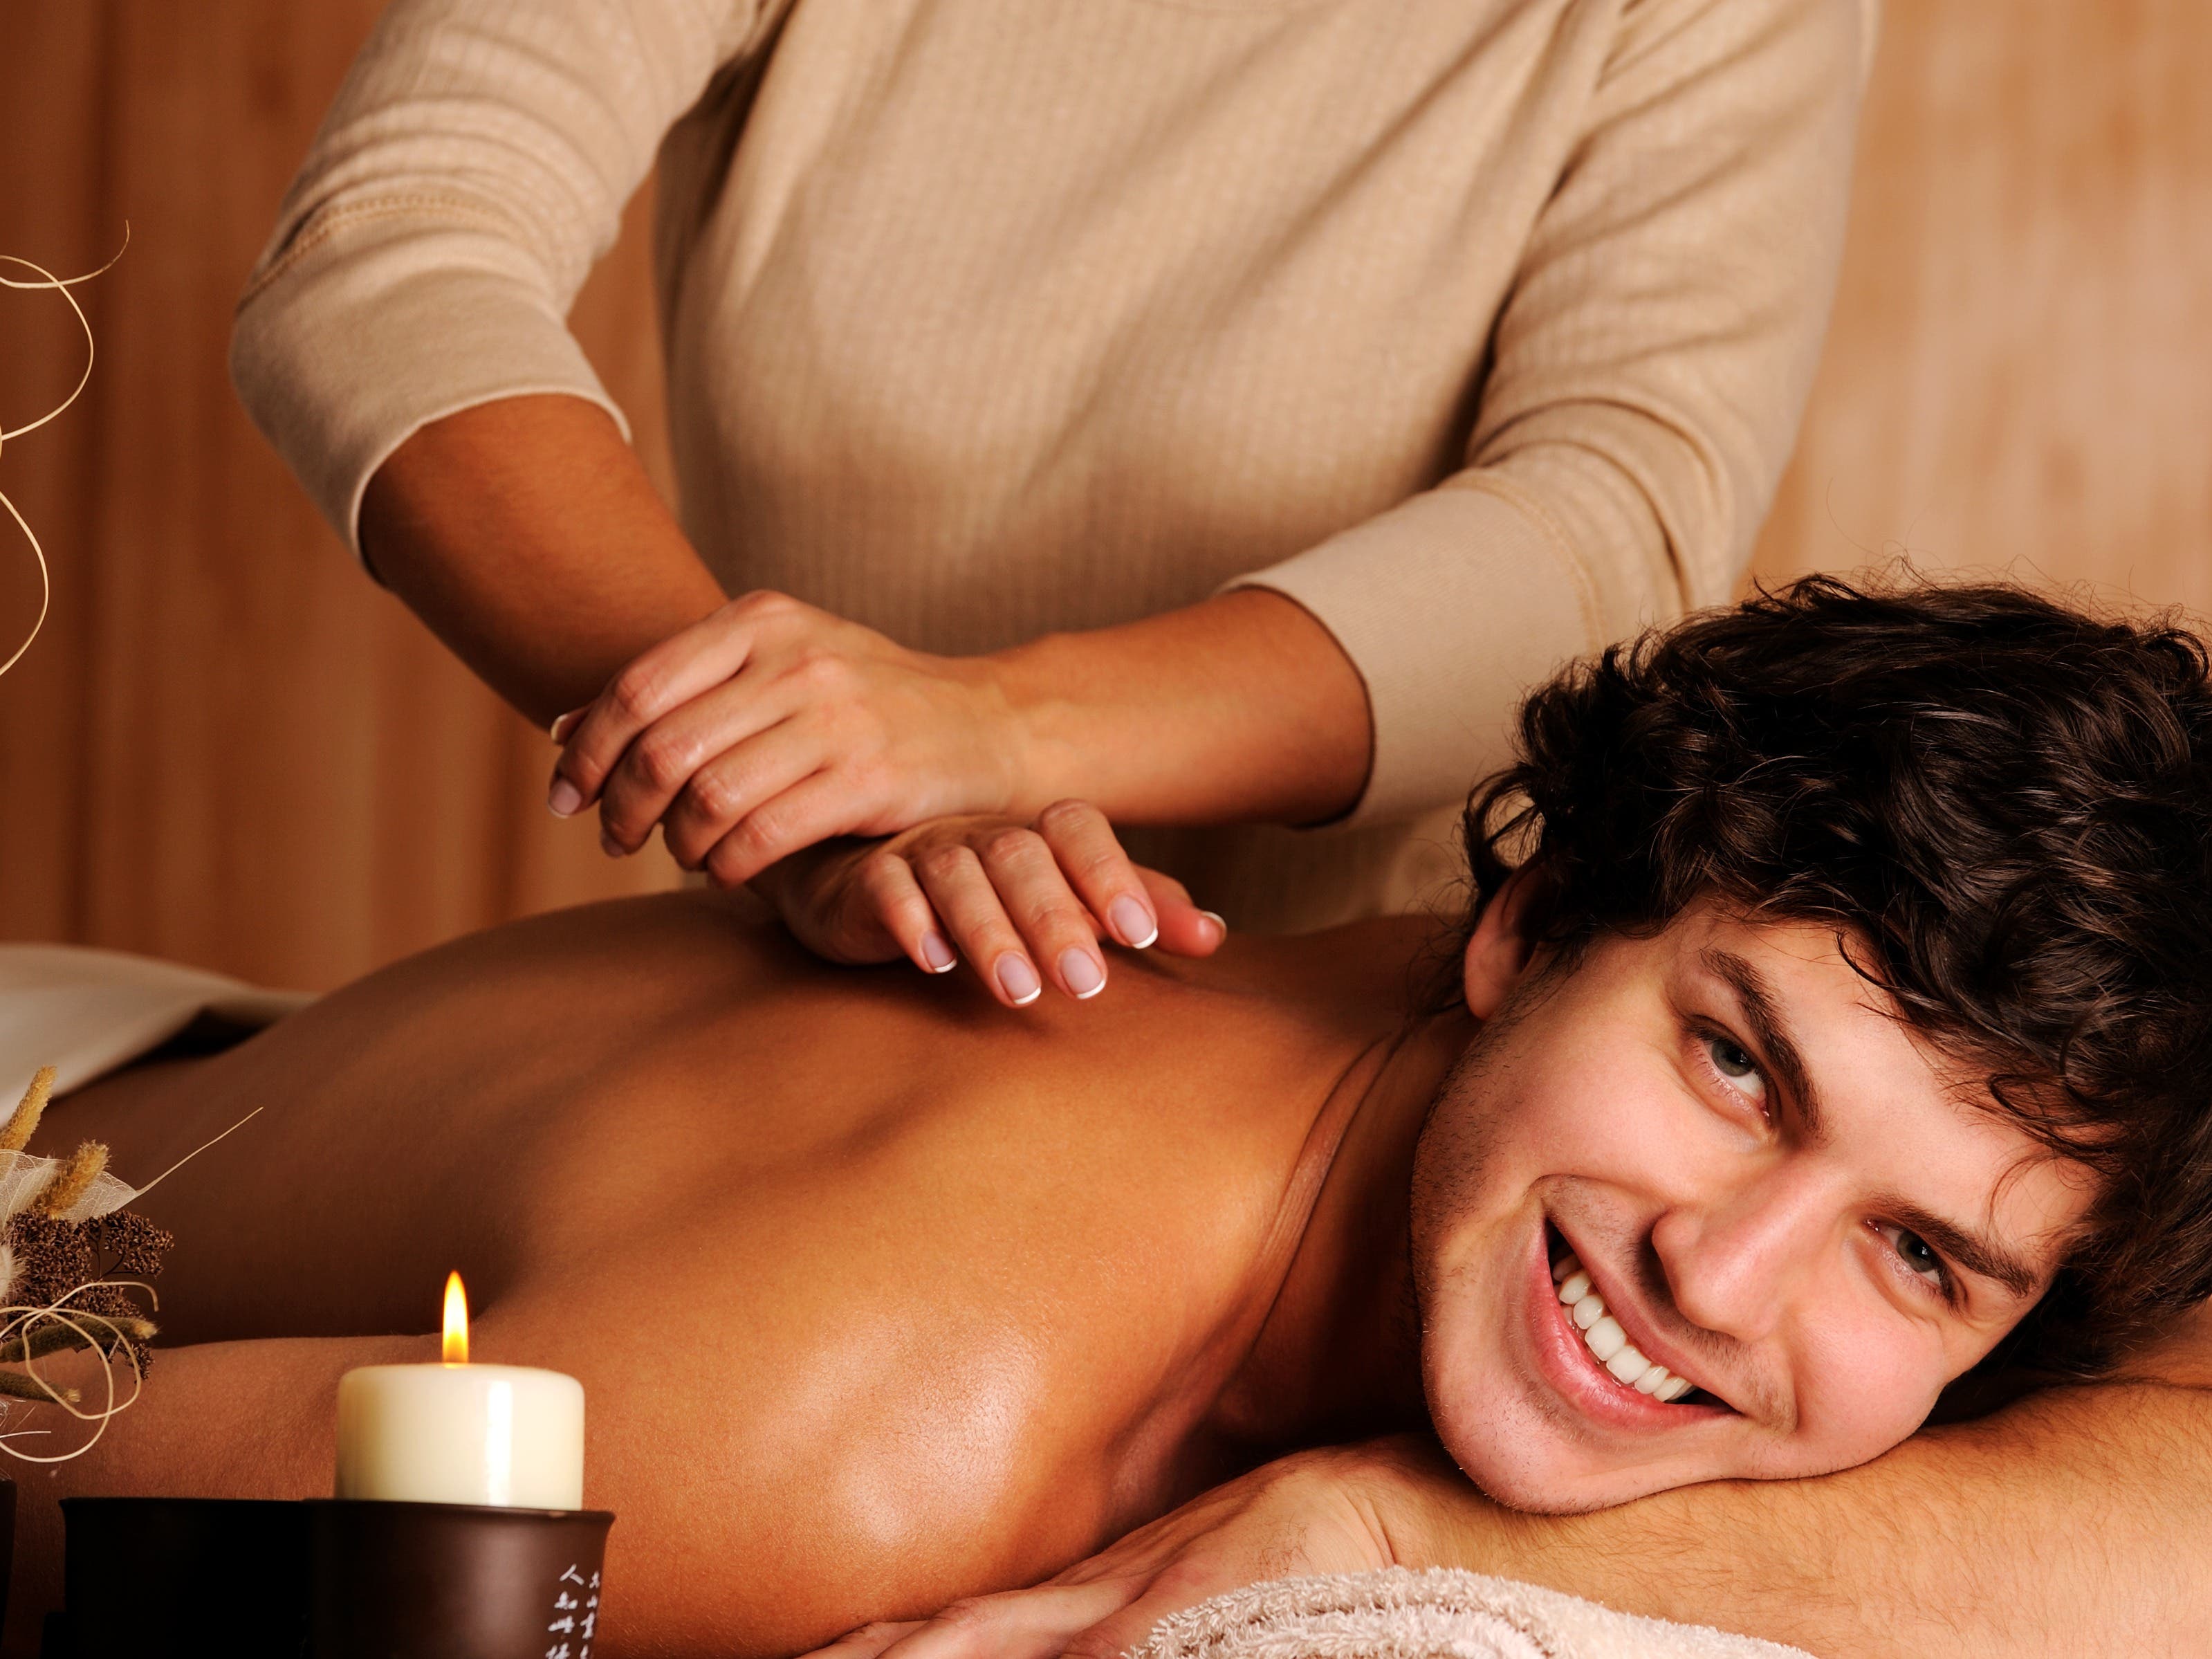 colin beaupre add sensual massage therapist jobs photo